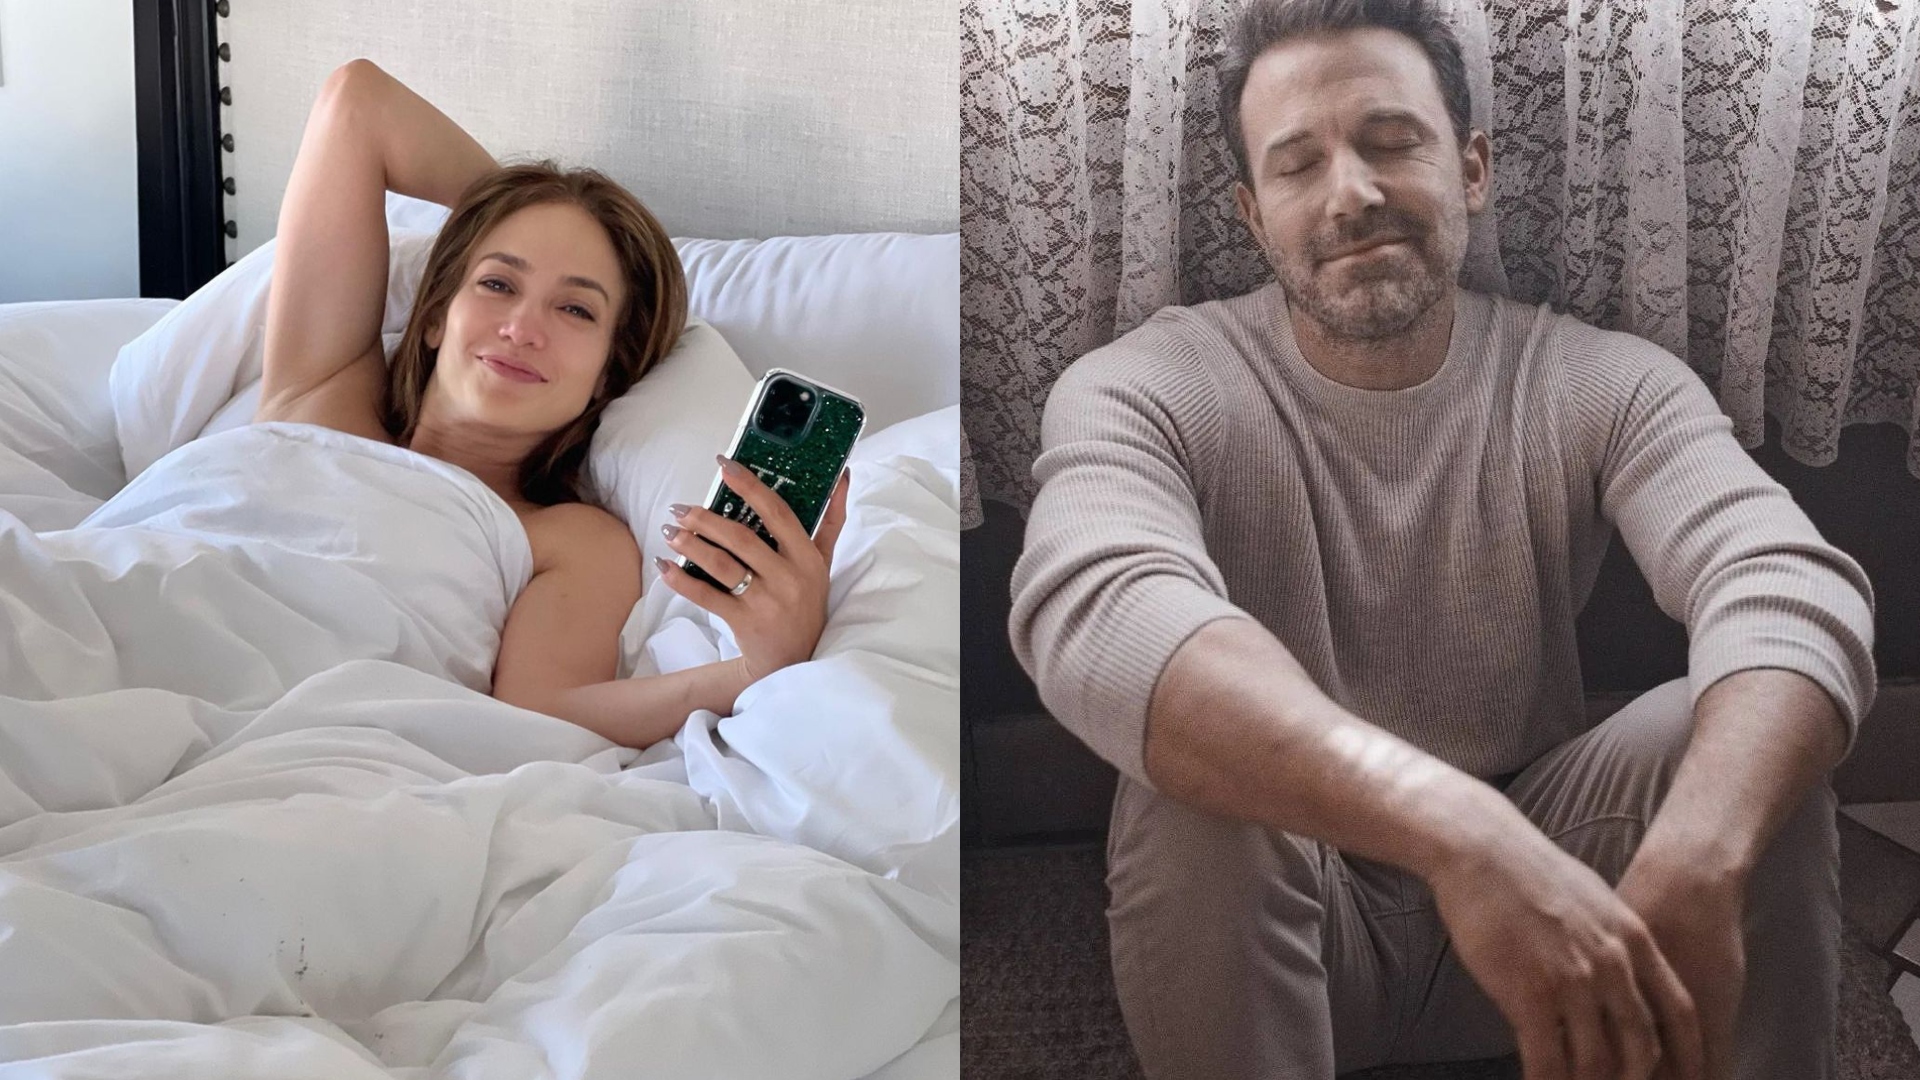 En redes circuló una fotografía de Ben Affleck dormido durante su luna de miel con Jennifer López y su familia, sobre lo que cientos de usuarios bromearon. (Fotos: Instagram/@jlo/@benaffleckreturn)